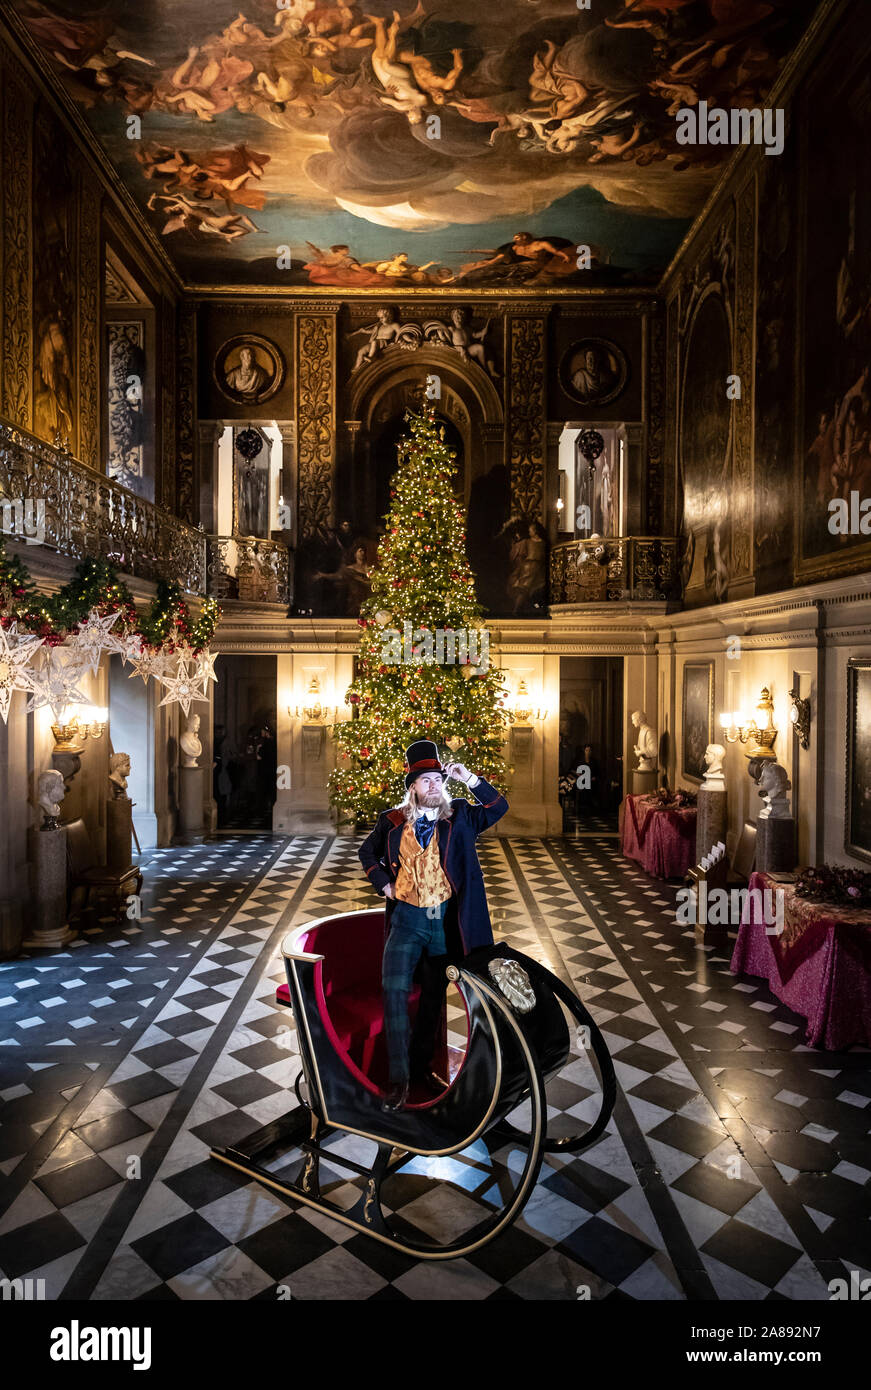 Ben Gilbert gekleidet, wie die Romanfigur Phileas Fogg während der Produkteinführung der in einem Land, Weit Weit Weg, Teil der Weihnachten celebraitions in Chatsworth House in der Nähe von Bakewell. Stockfoto